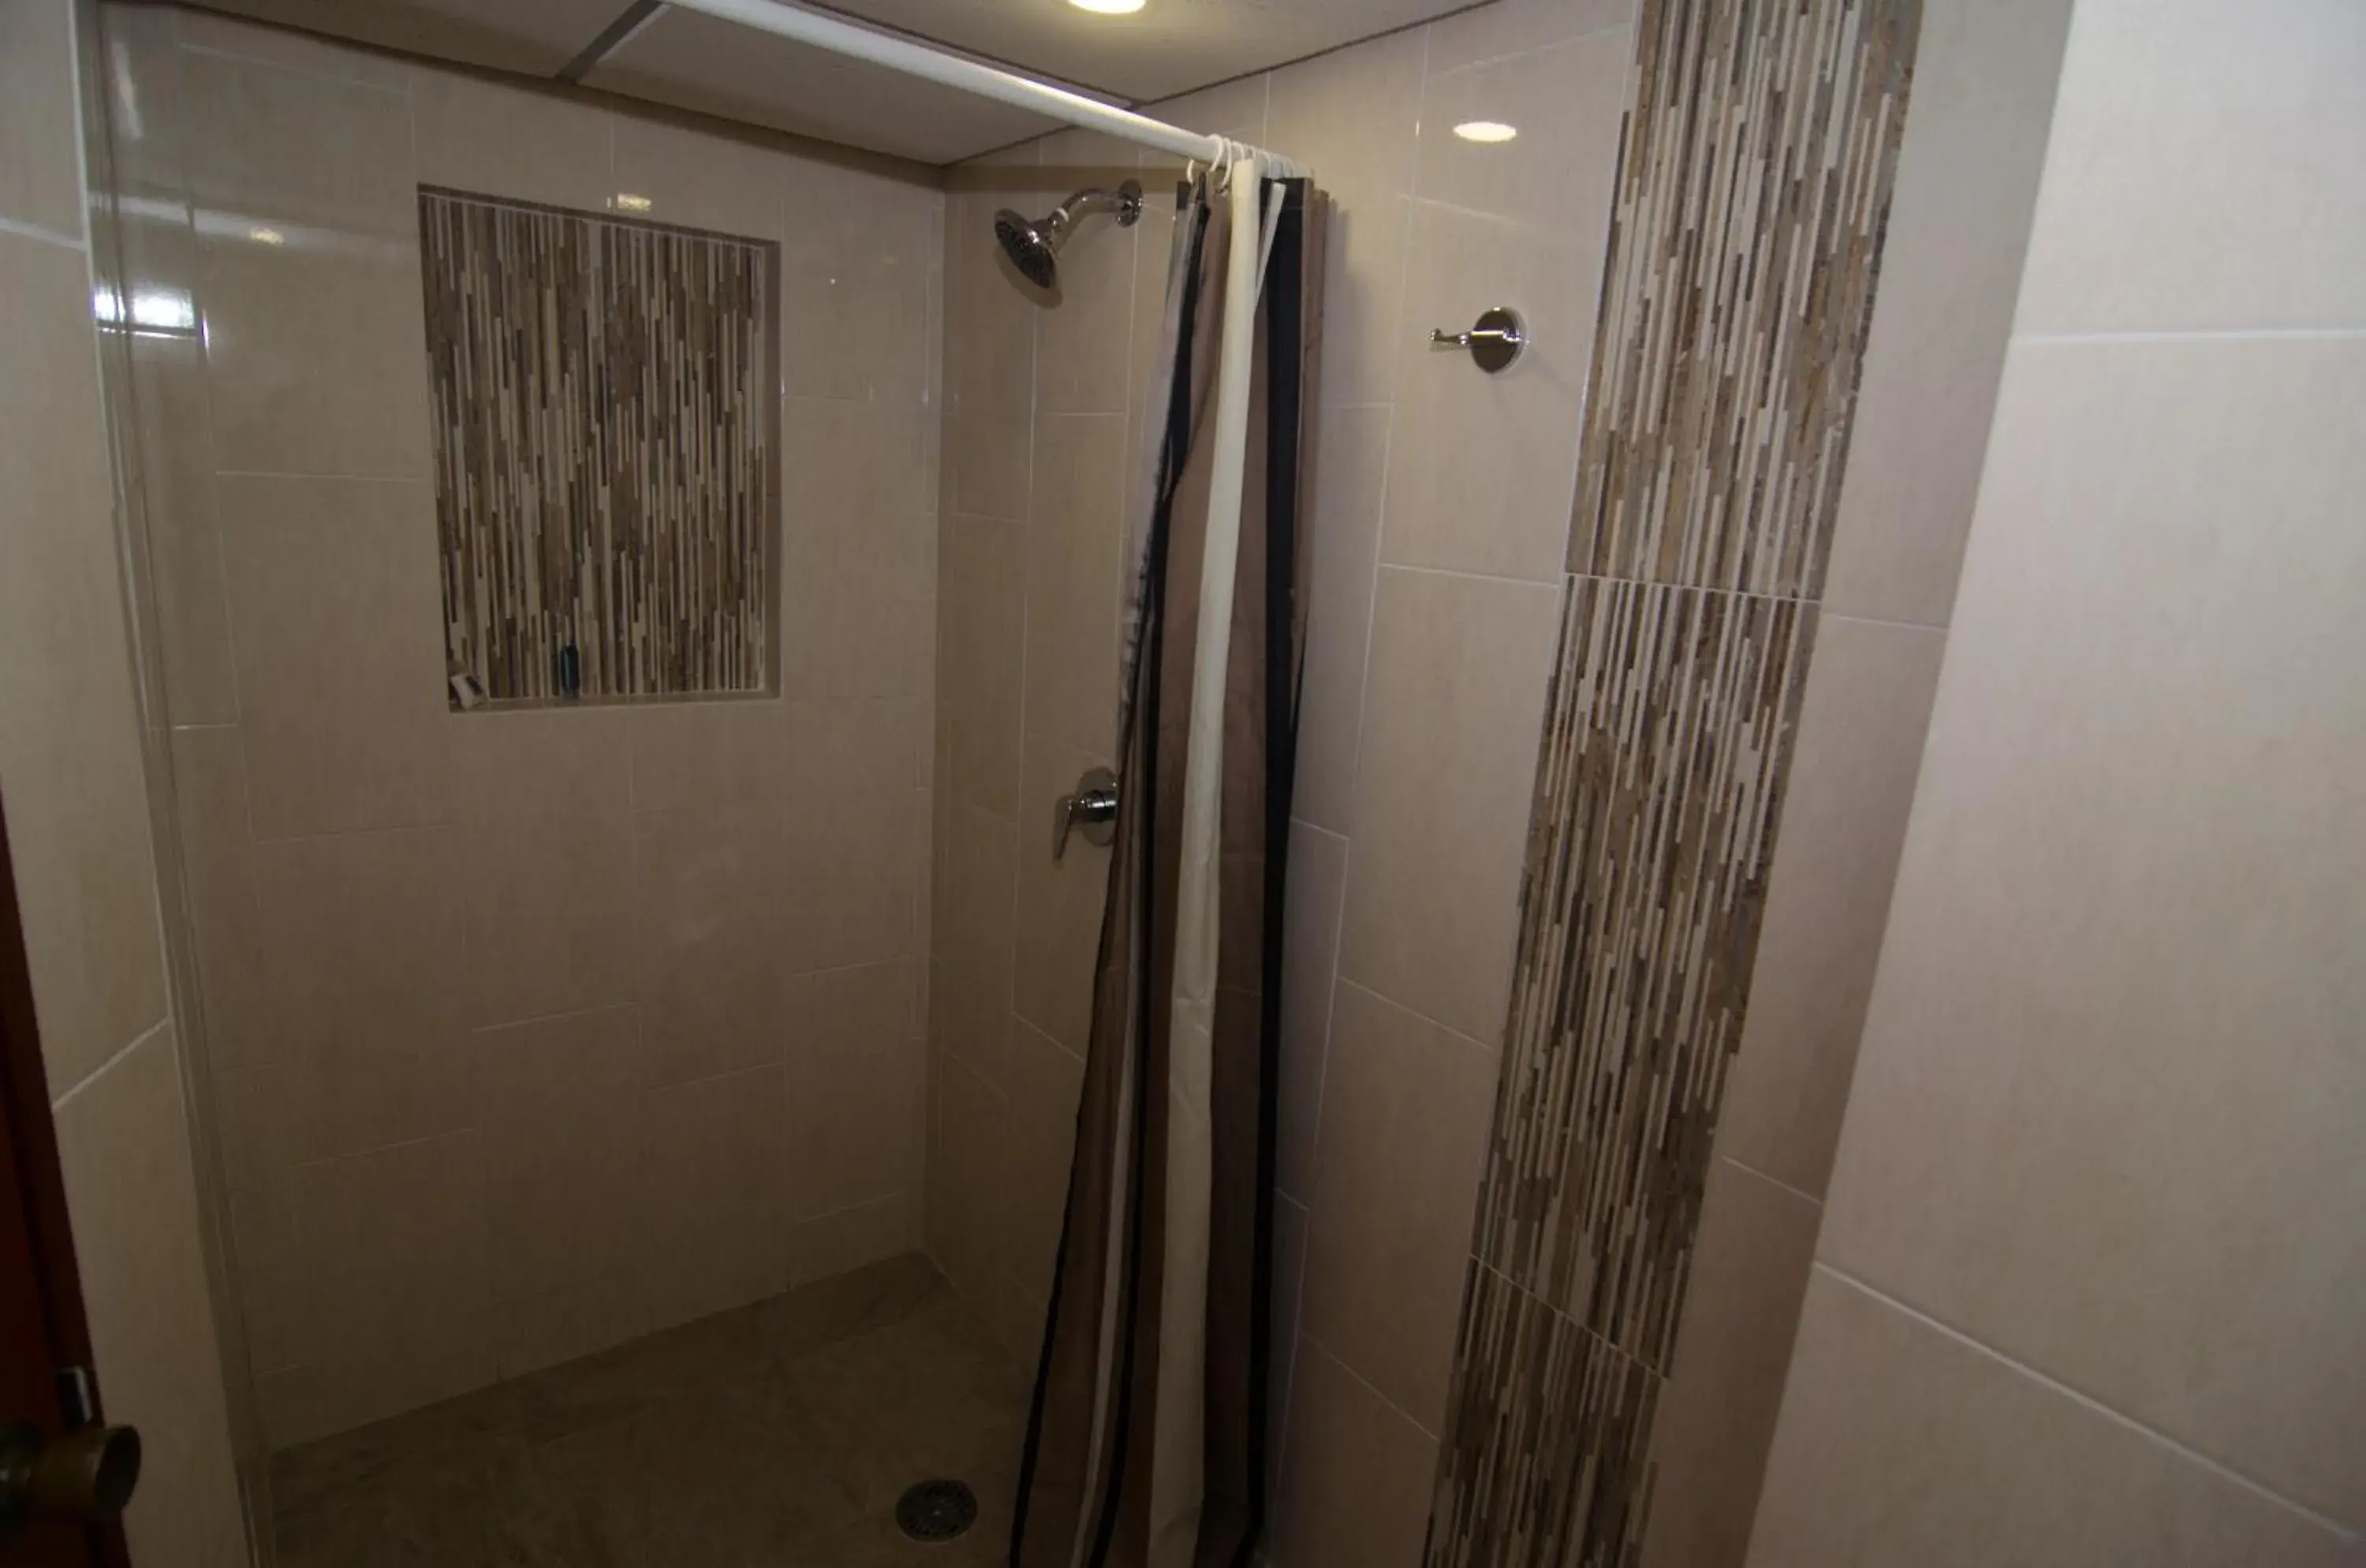 Bathroom in Comfort Inn Veracruz